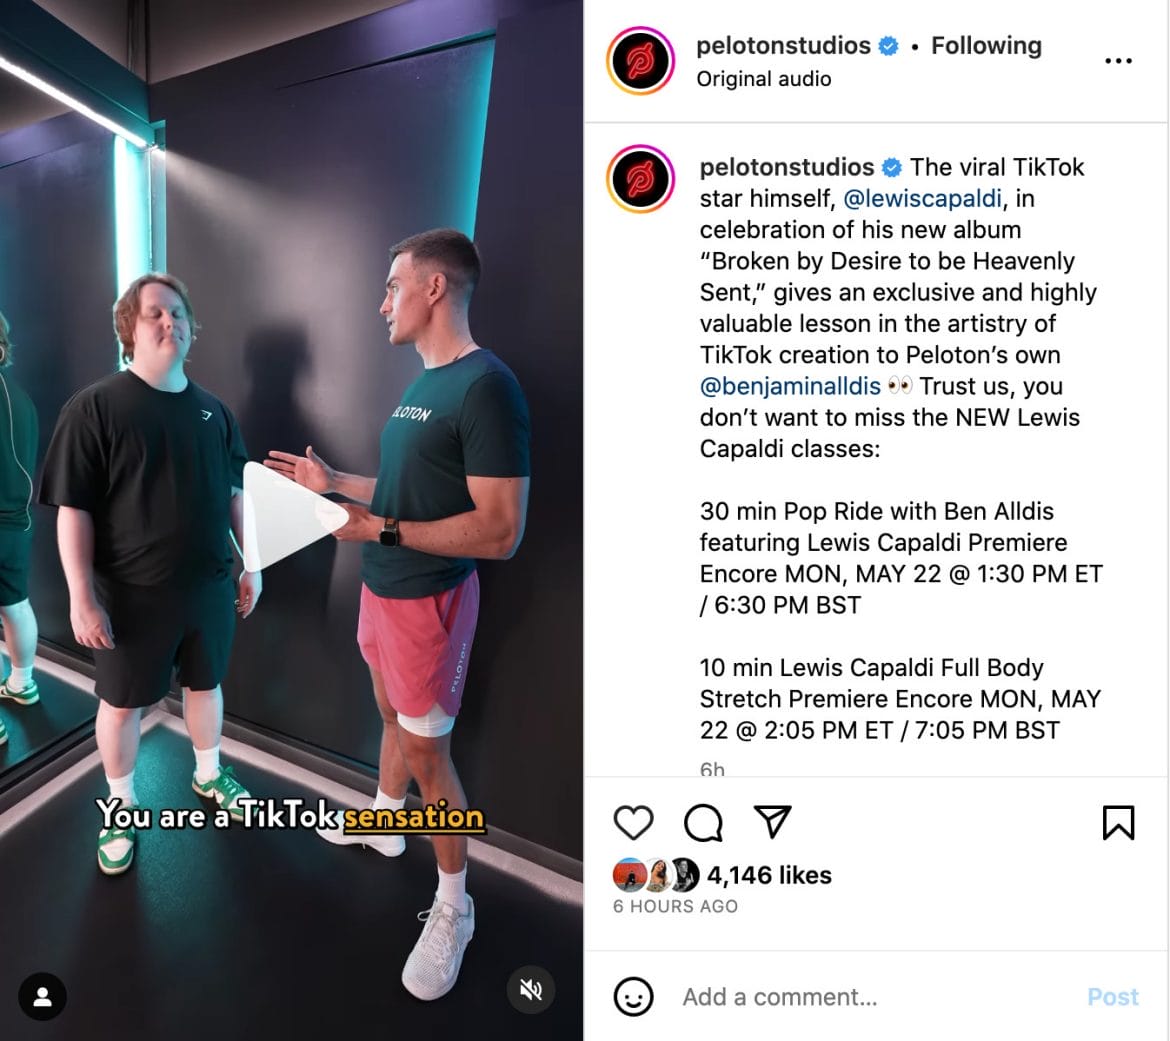 Peloton Studios Instagram post announcing Lewis Capaldi classes.